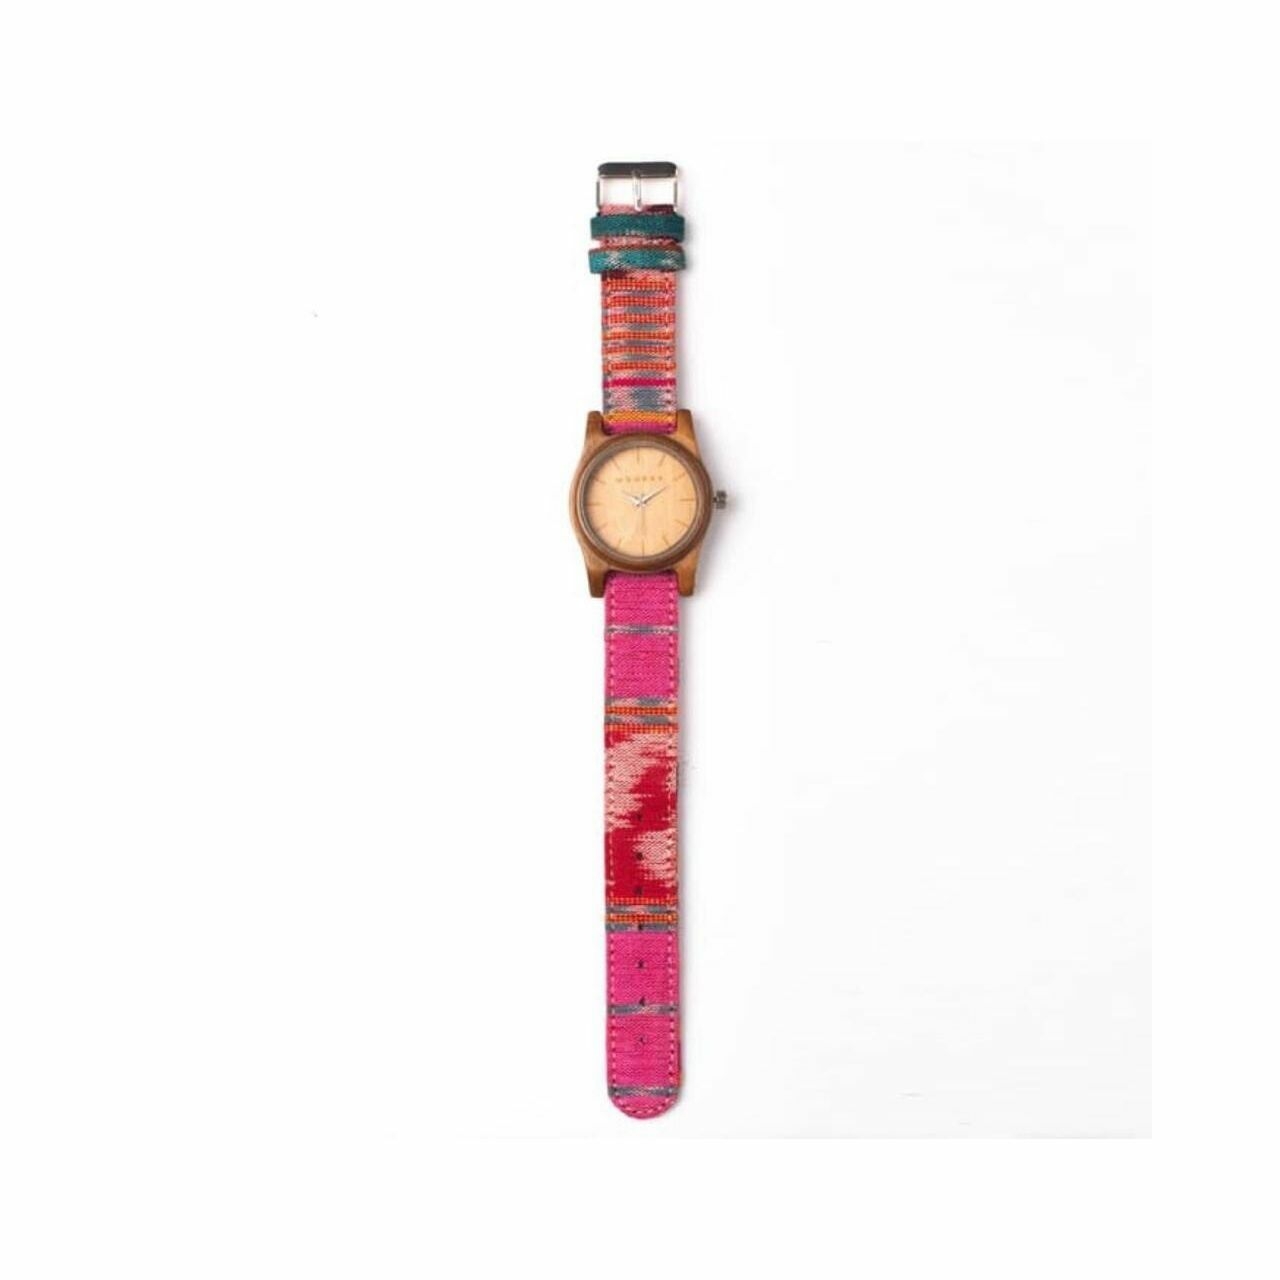 Woodka Mini Loca Jati & Teal Pinkish Wristwatch